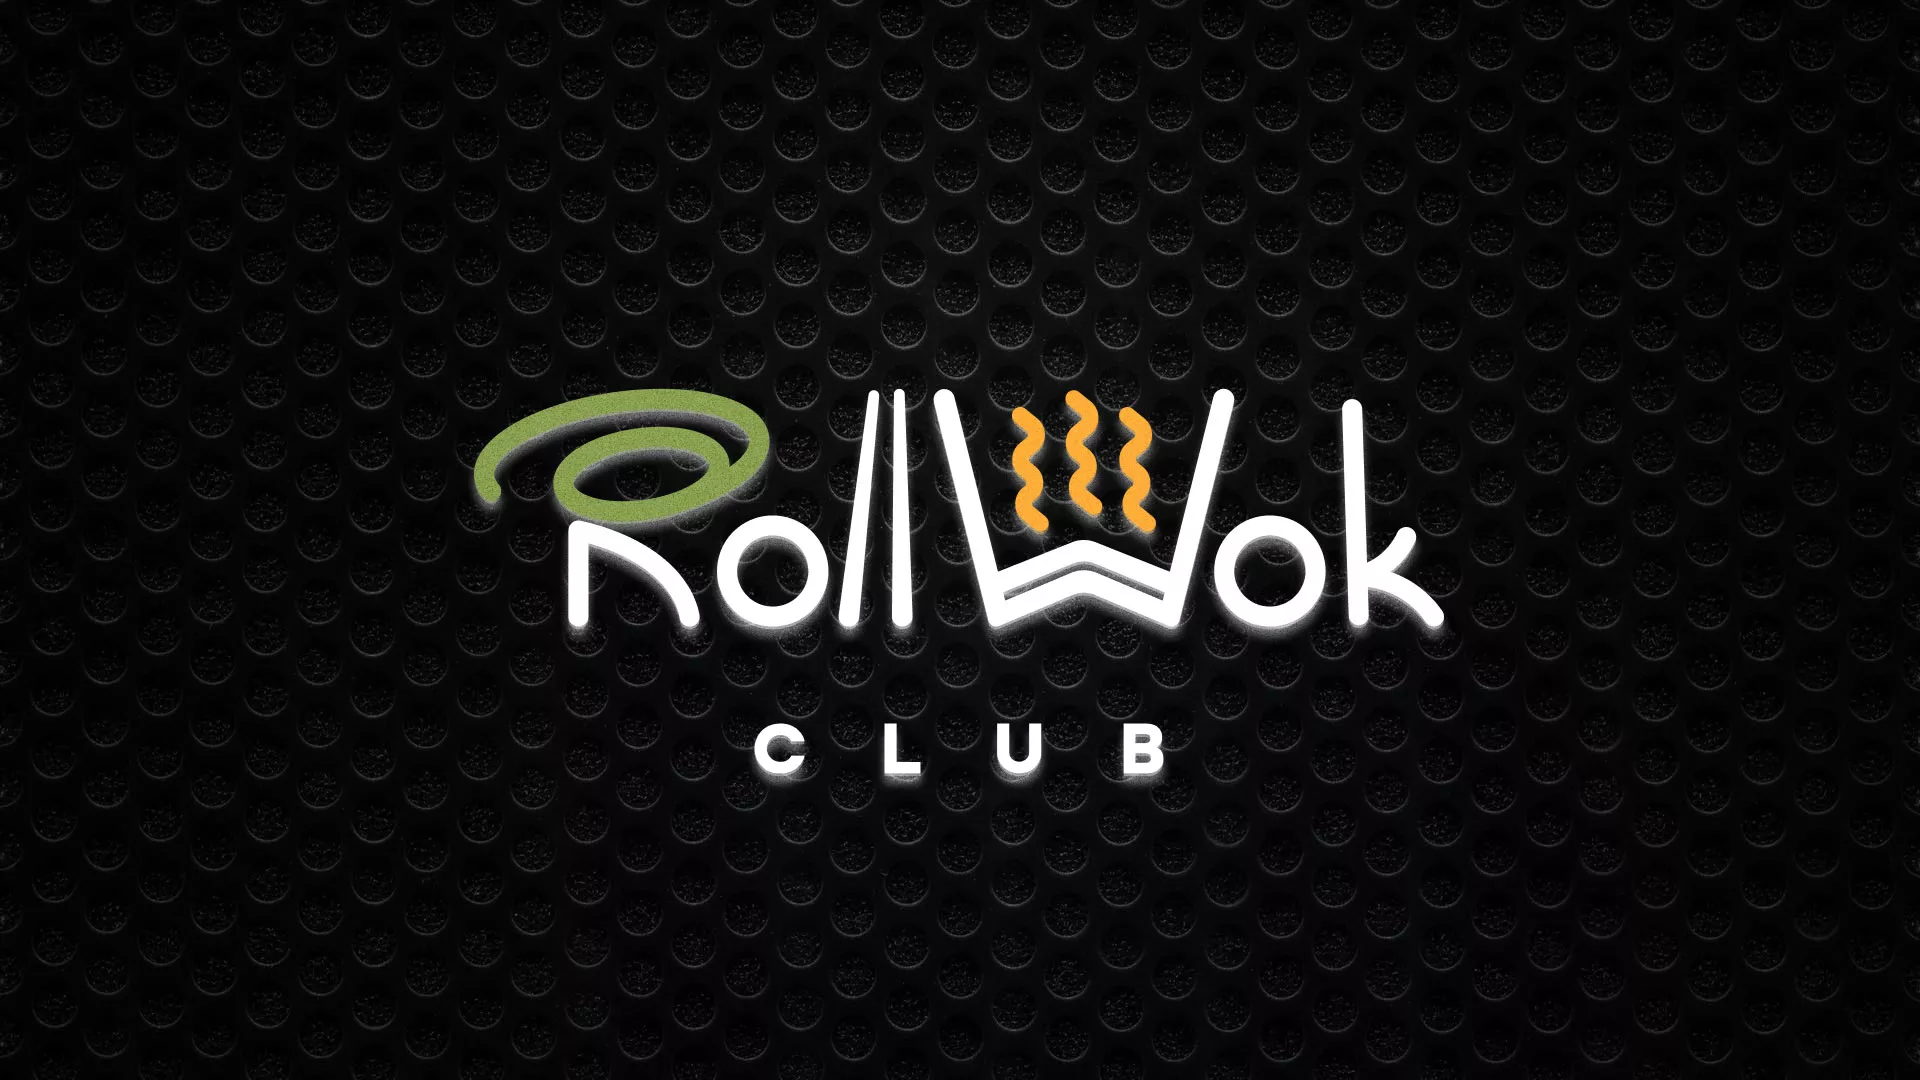 Брендирование торговых точек суши-бара «Roll Wok Club» в Советске